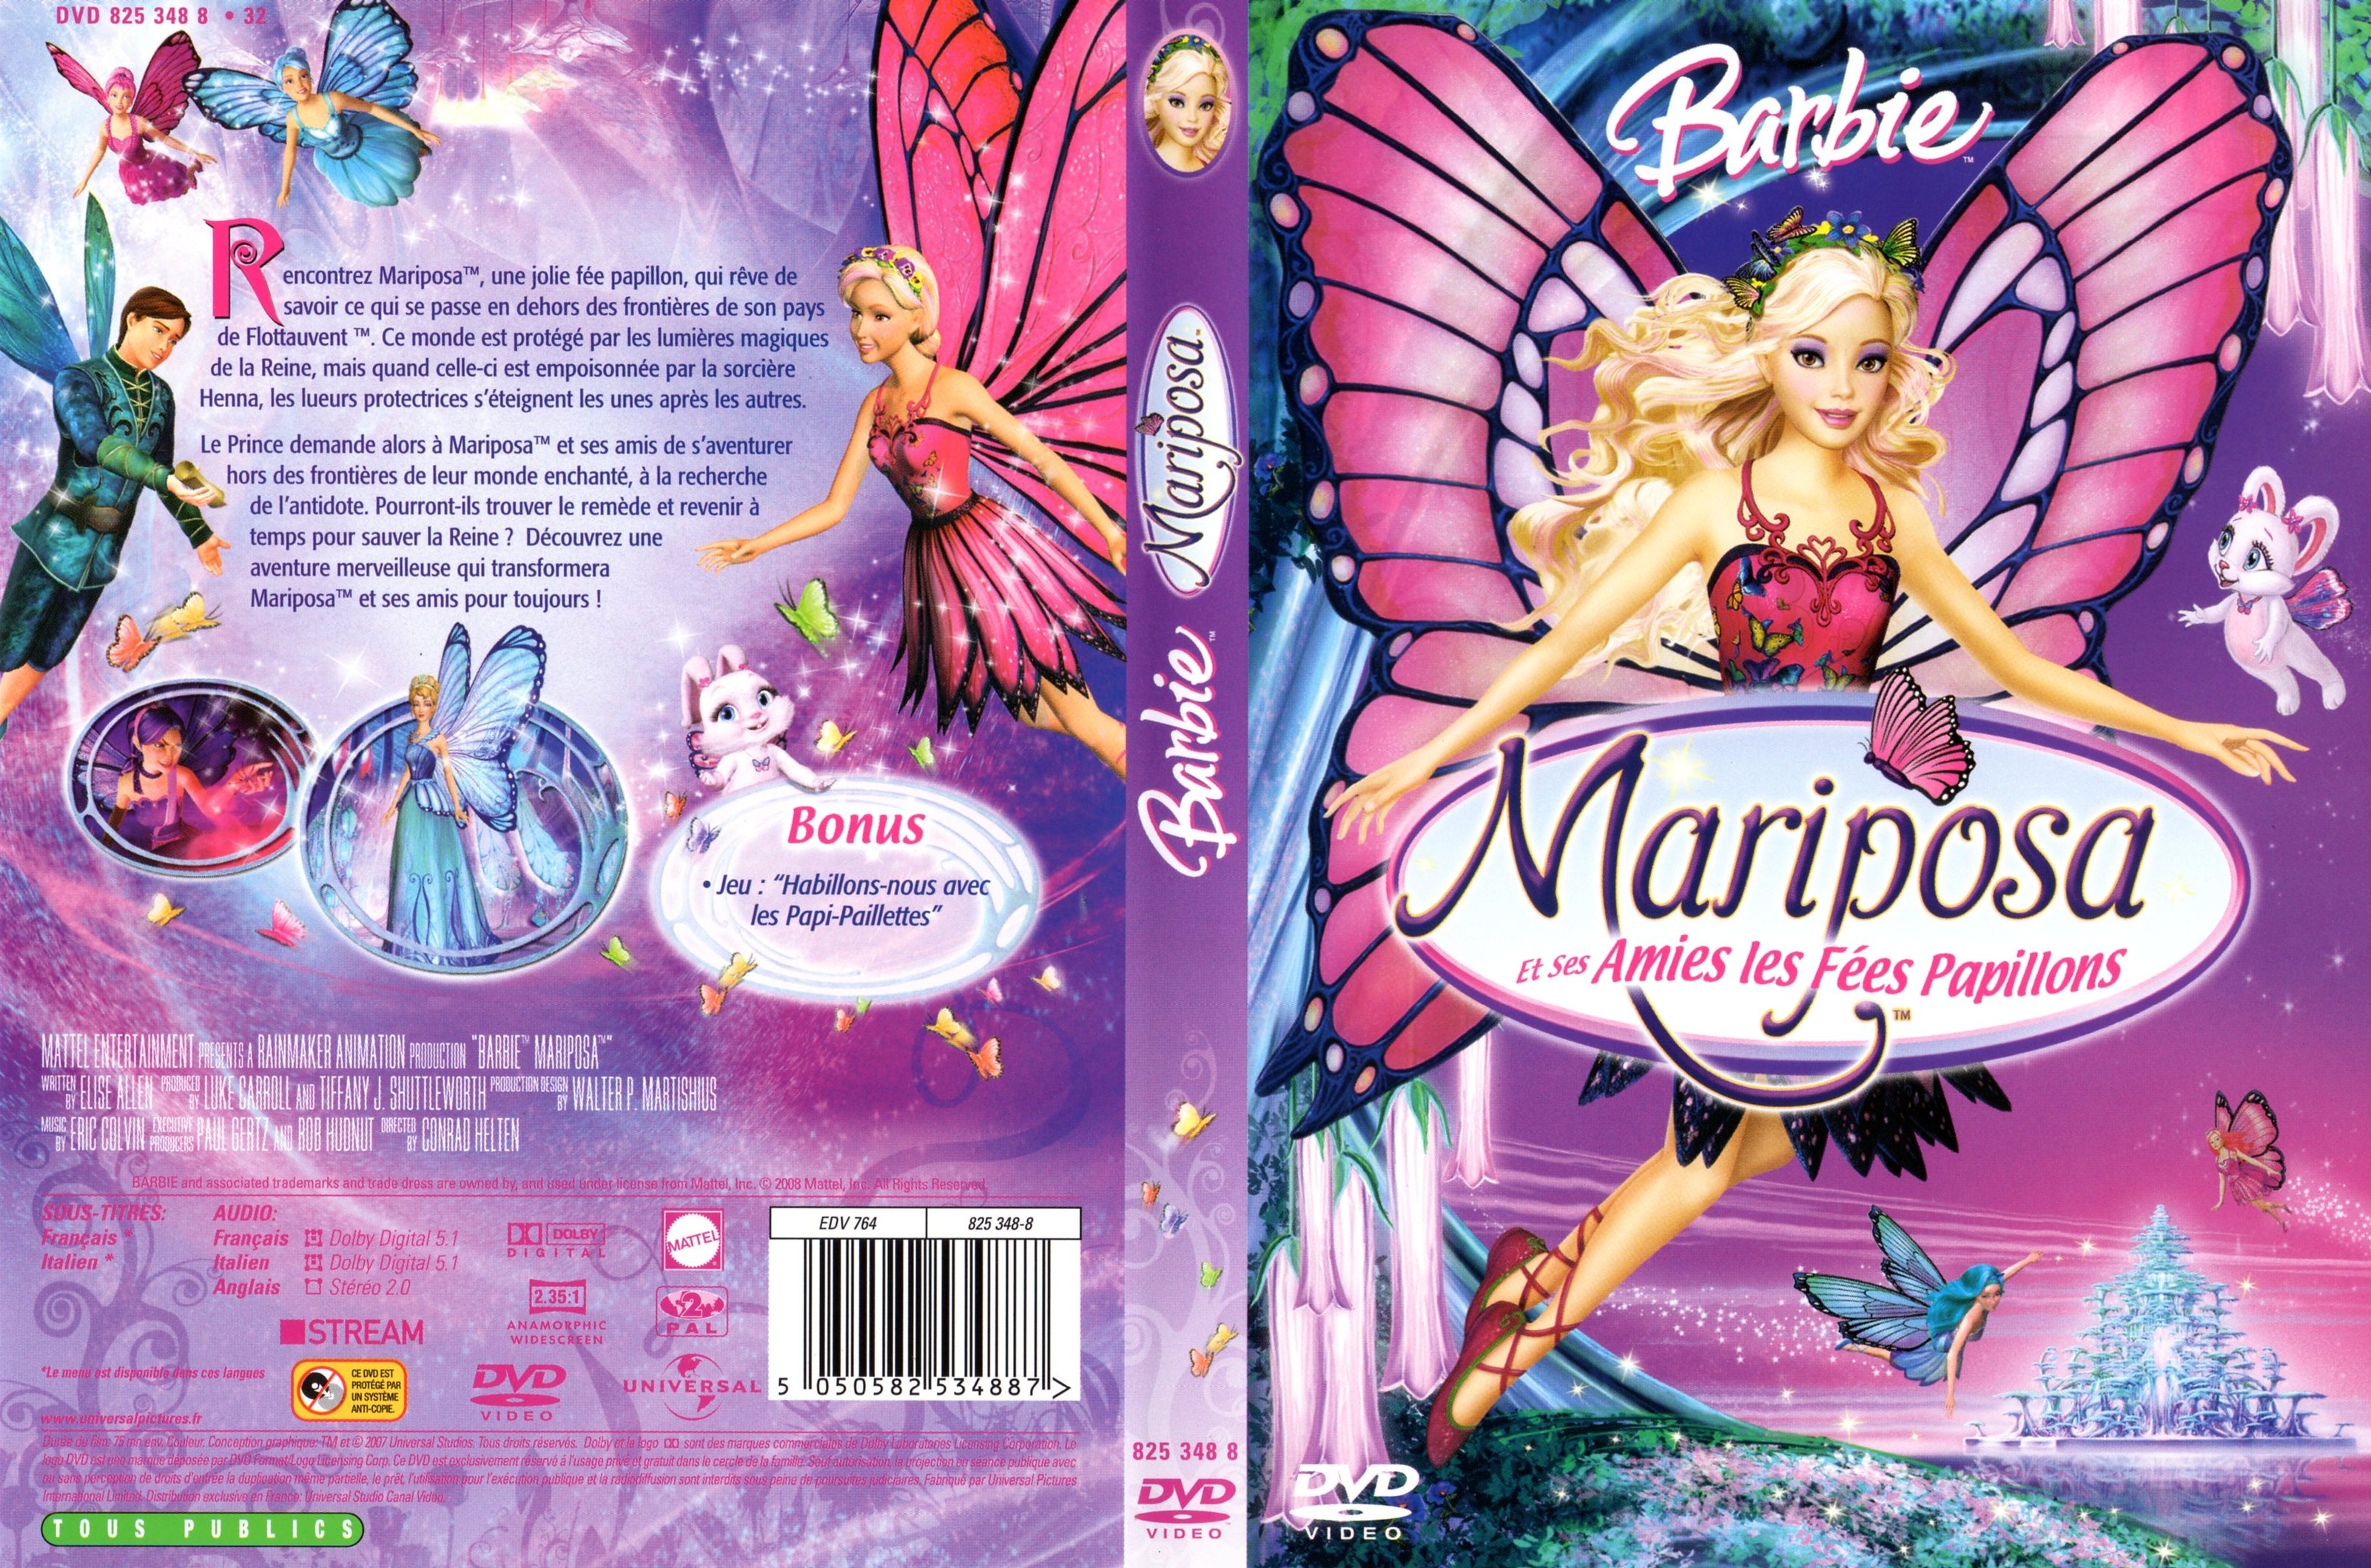 Jaquette DVD Barbie mariposa et ses amies les fes papillons